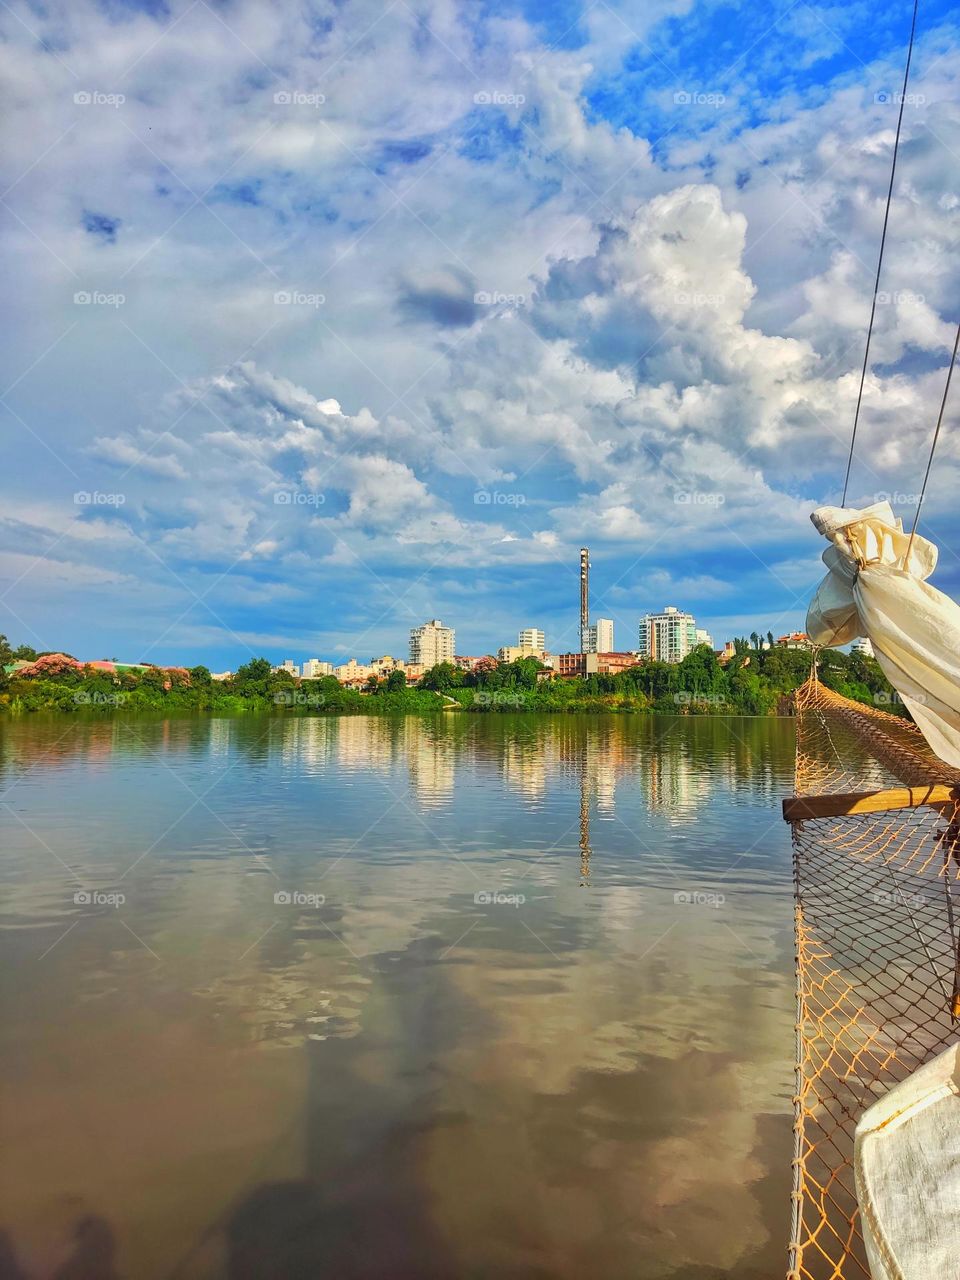 passeio de barco entre Lajeado e Cruzeiro
a trip in a boat between Cities